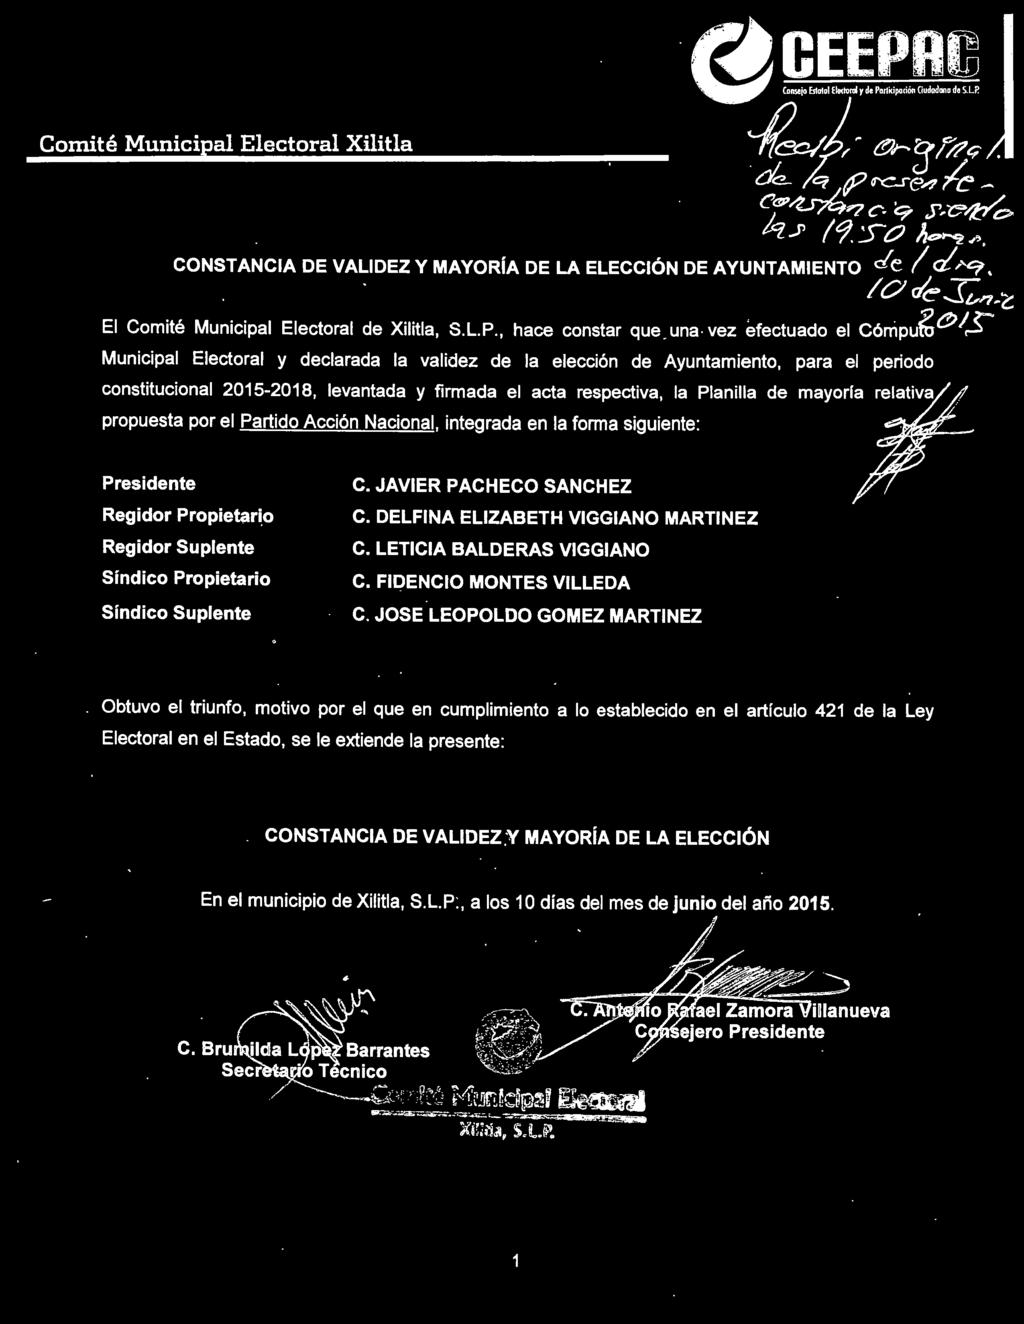 una -vez efectuado el Cónipufu ~ I$' Municipal Electoral y declarada la validez de la elección de Ayuntamiento, para el periodo constitucional 2015-2018, levantada y firmada el acta respectiva, la